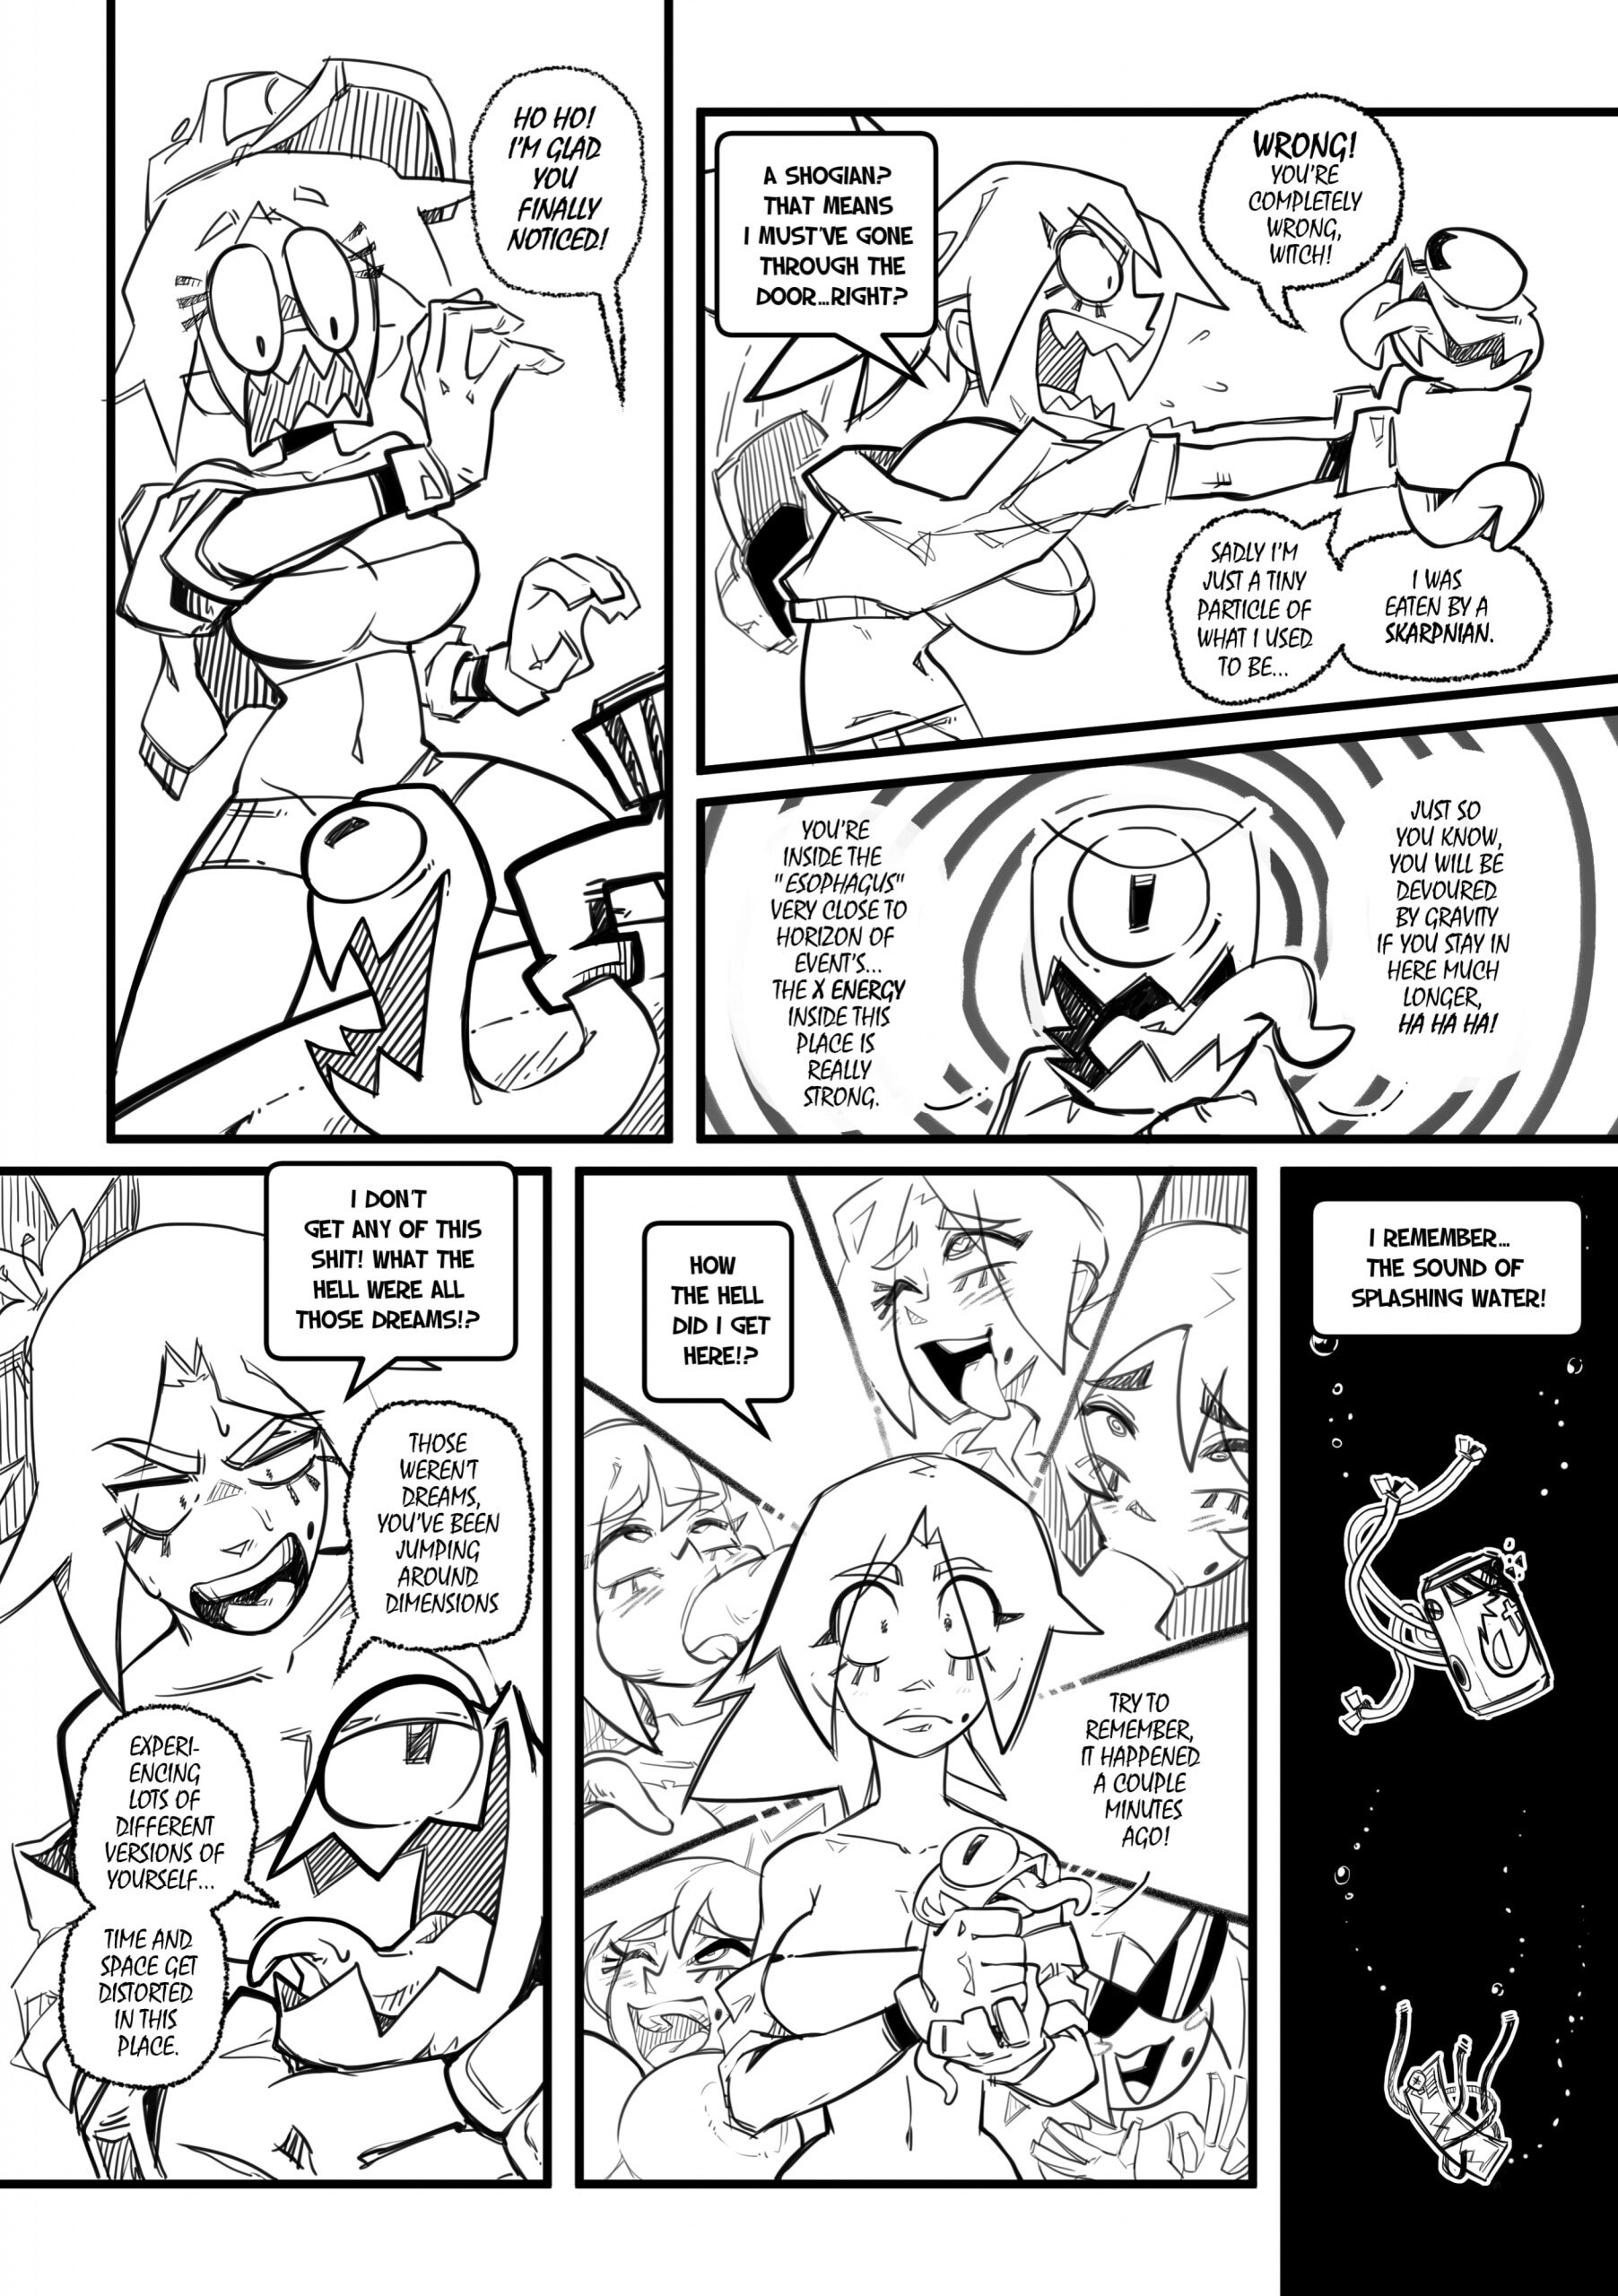 Skarpworld 10: Milk Crisis 4 - Gravity - Page 18